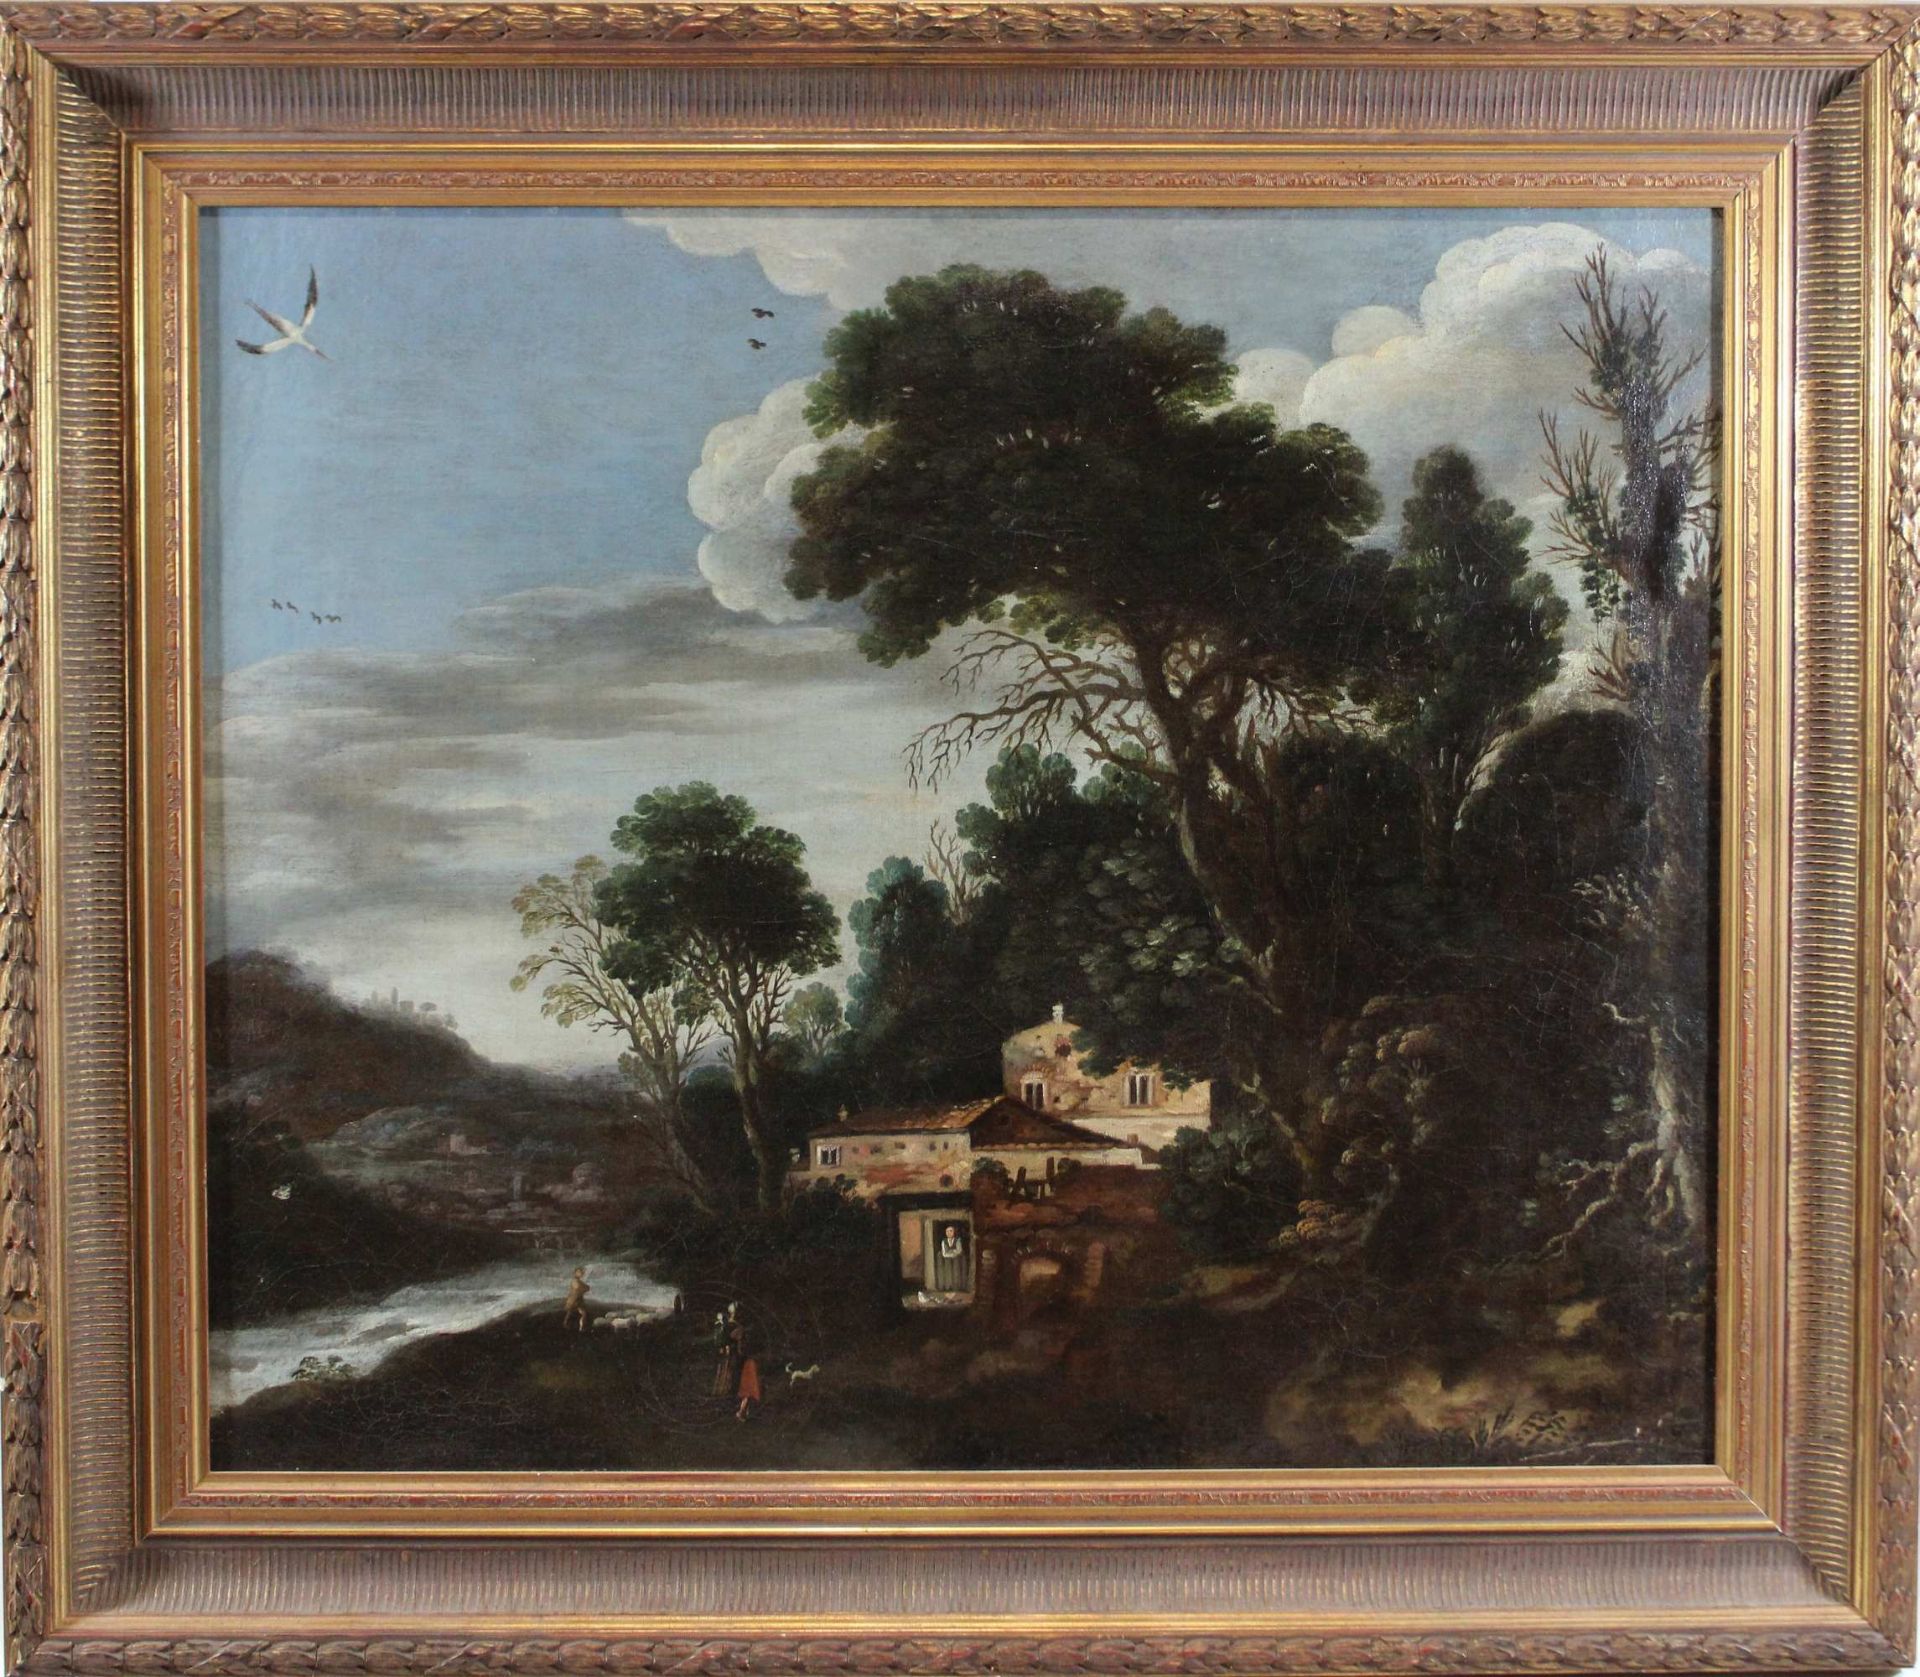 Unbekannter Künstler, 18. Jh., Szene am Fluss, Öl auf Leinwand, unsigniert. - Image 2 of 2